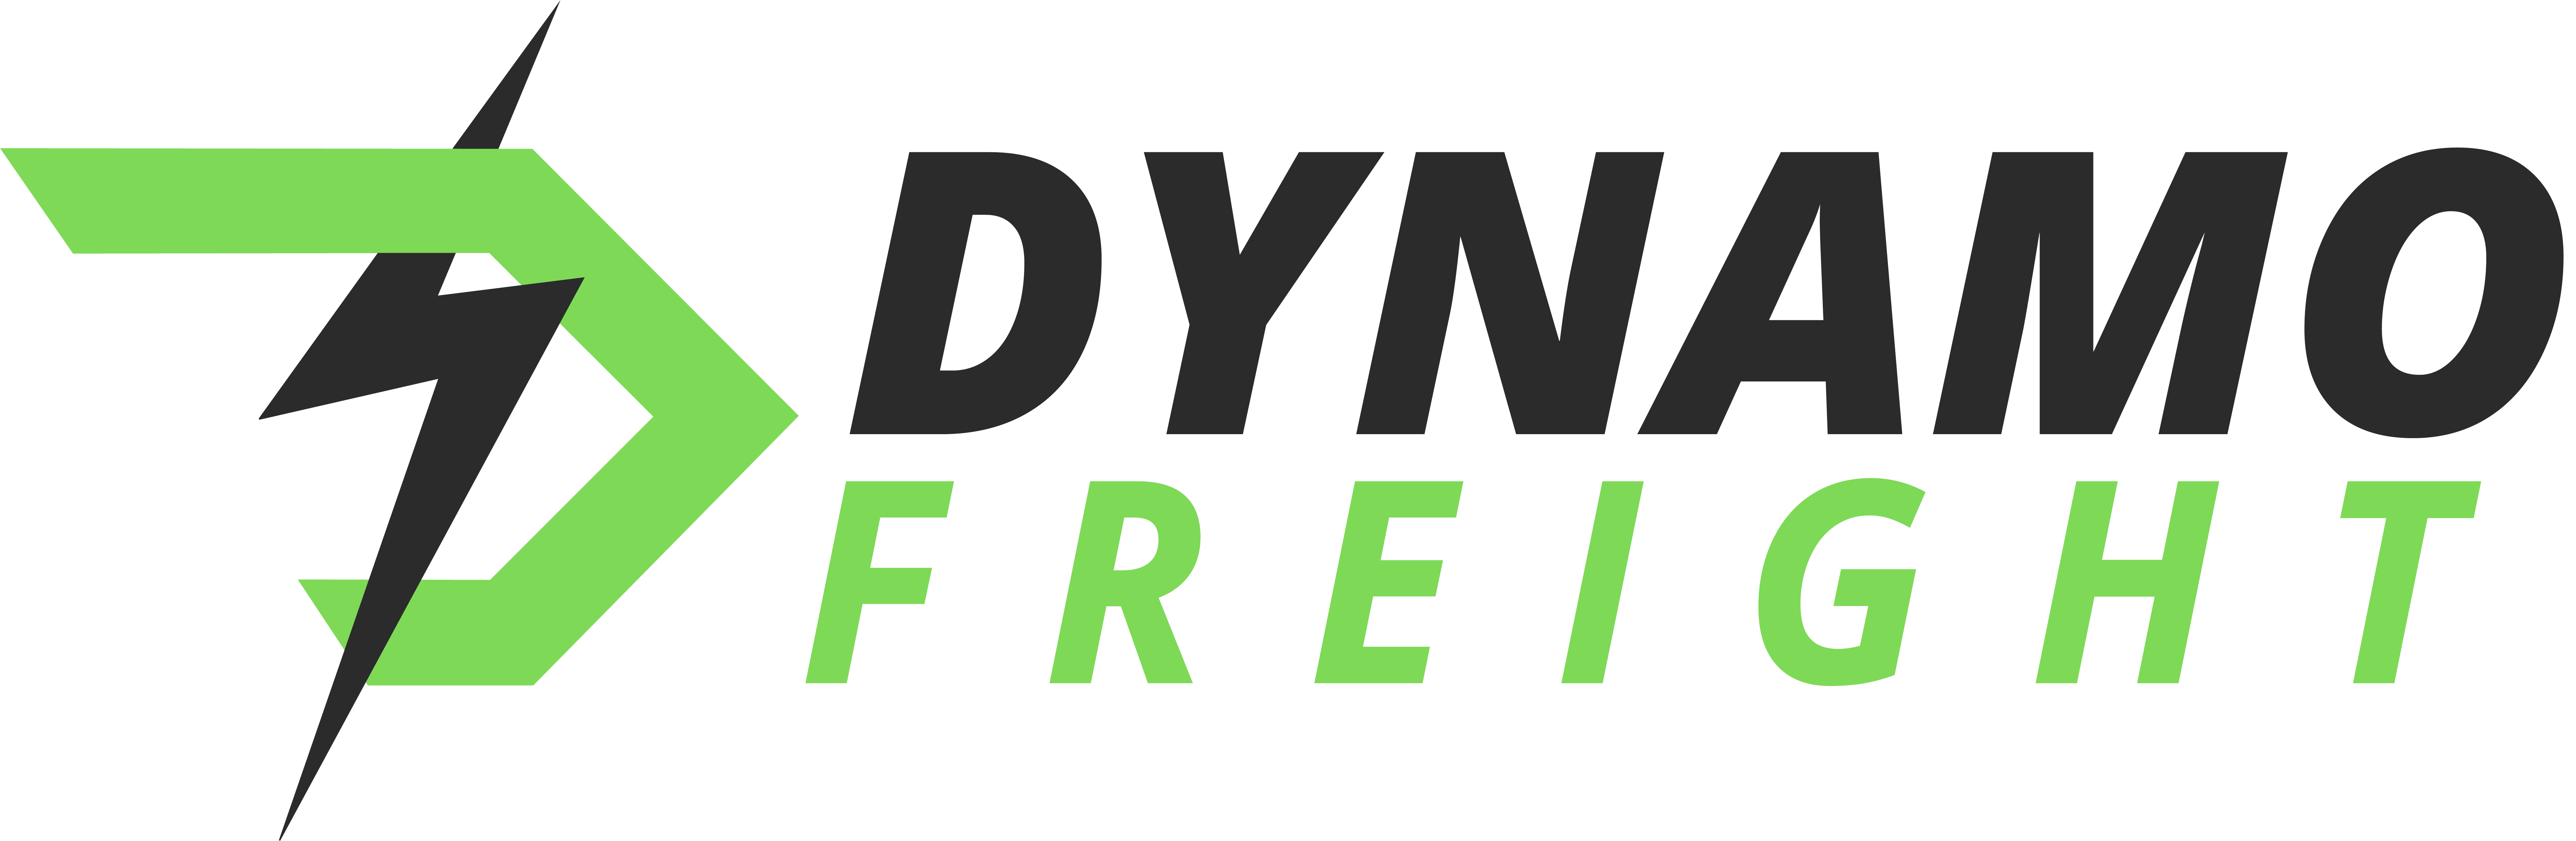 Dynamo Freight, LLC (Gold)